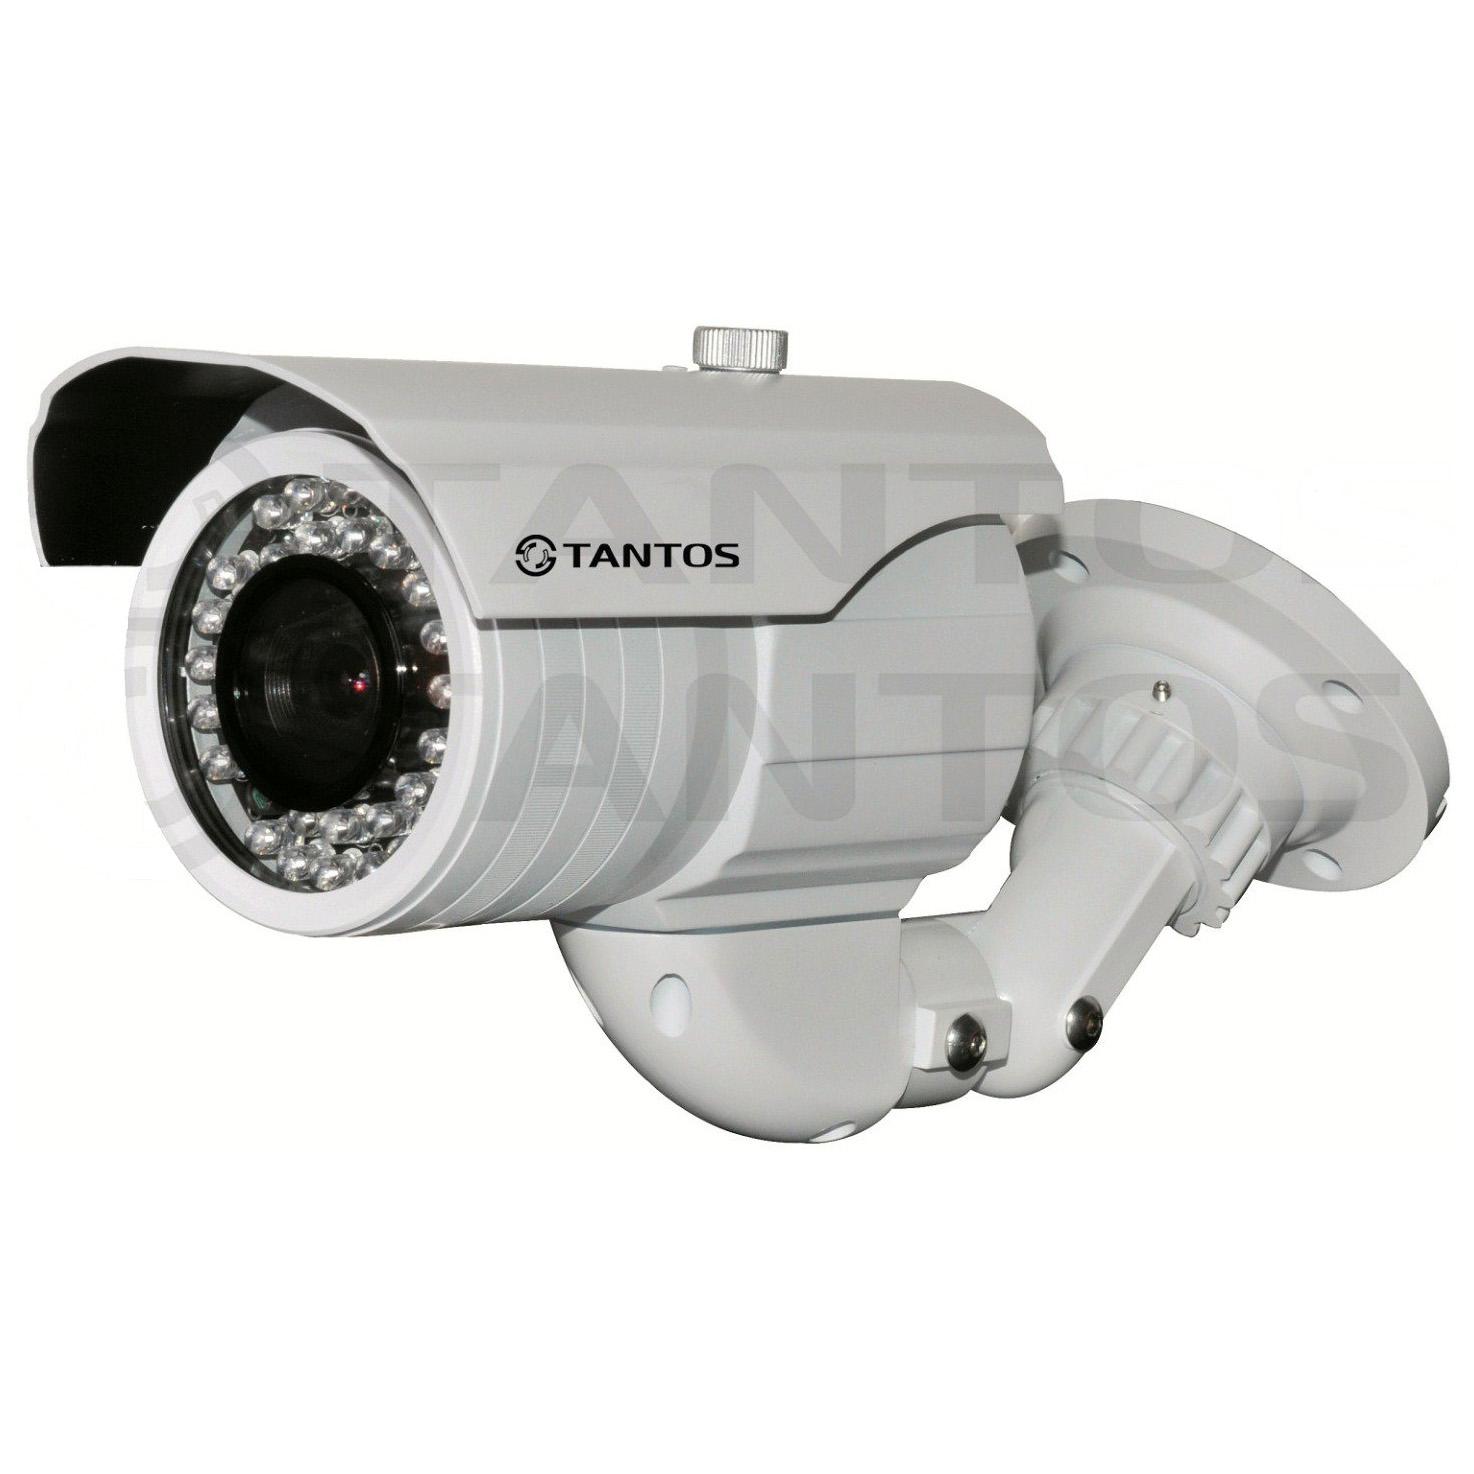 Цветная камера. J2000 CCTV камера. Tantos TSC pl600cv видеокамера. TSC-pl550v (2.8-12) камера Тантос. J2000 камера поворотная.